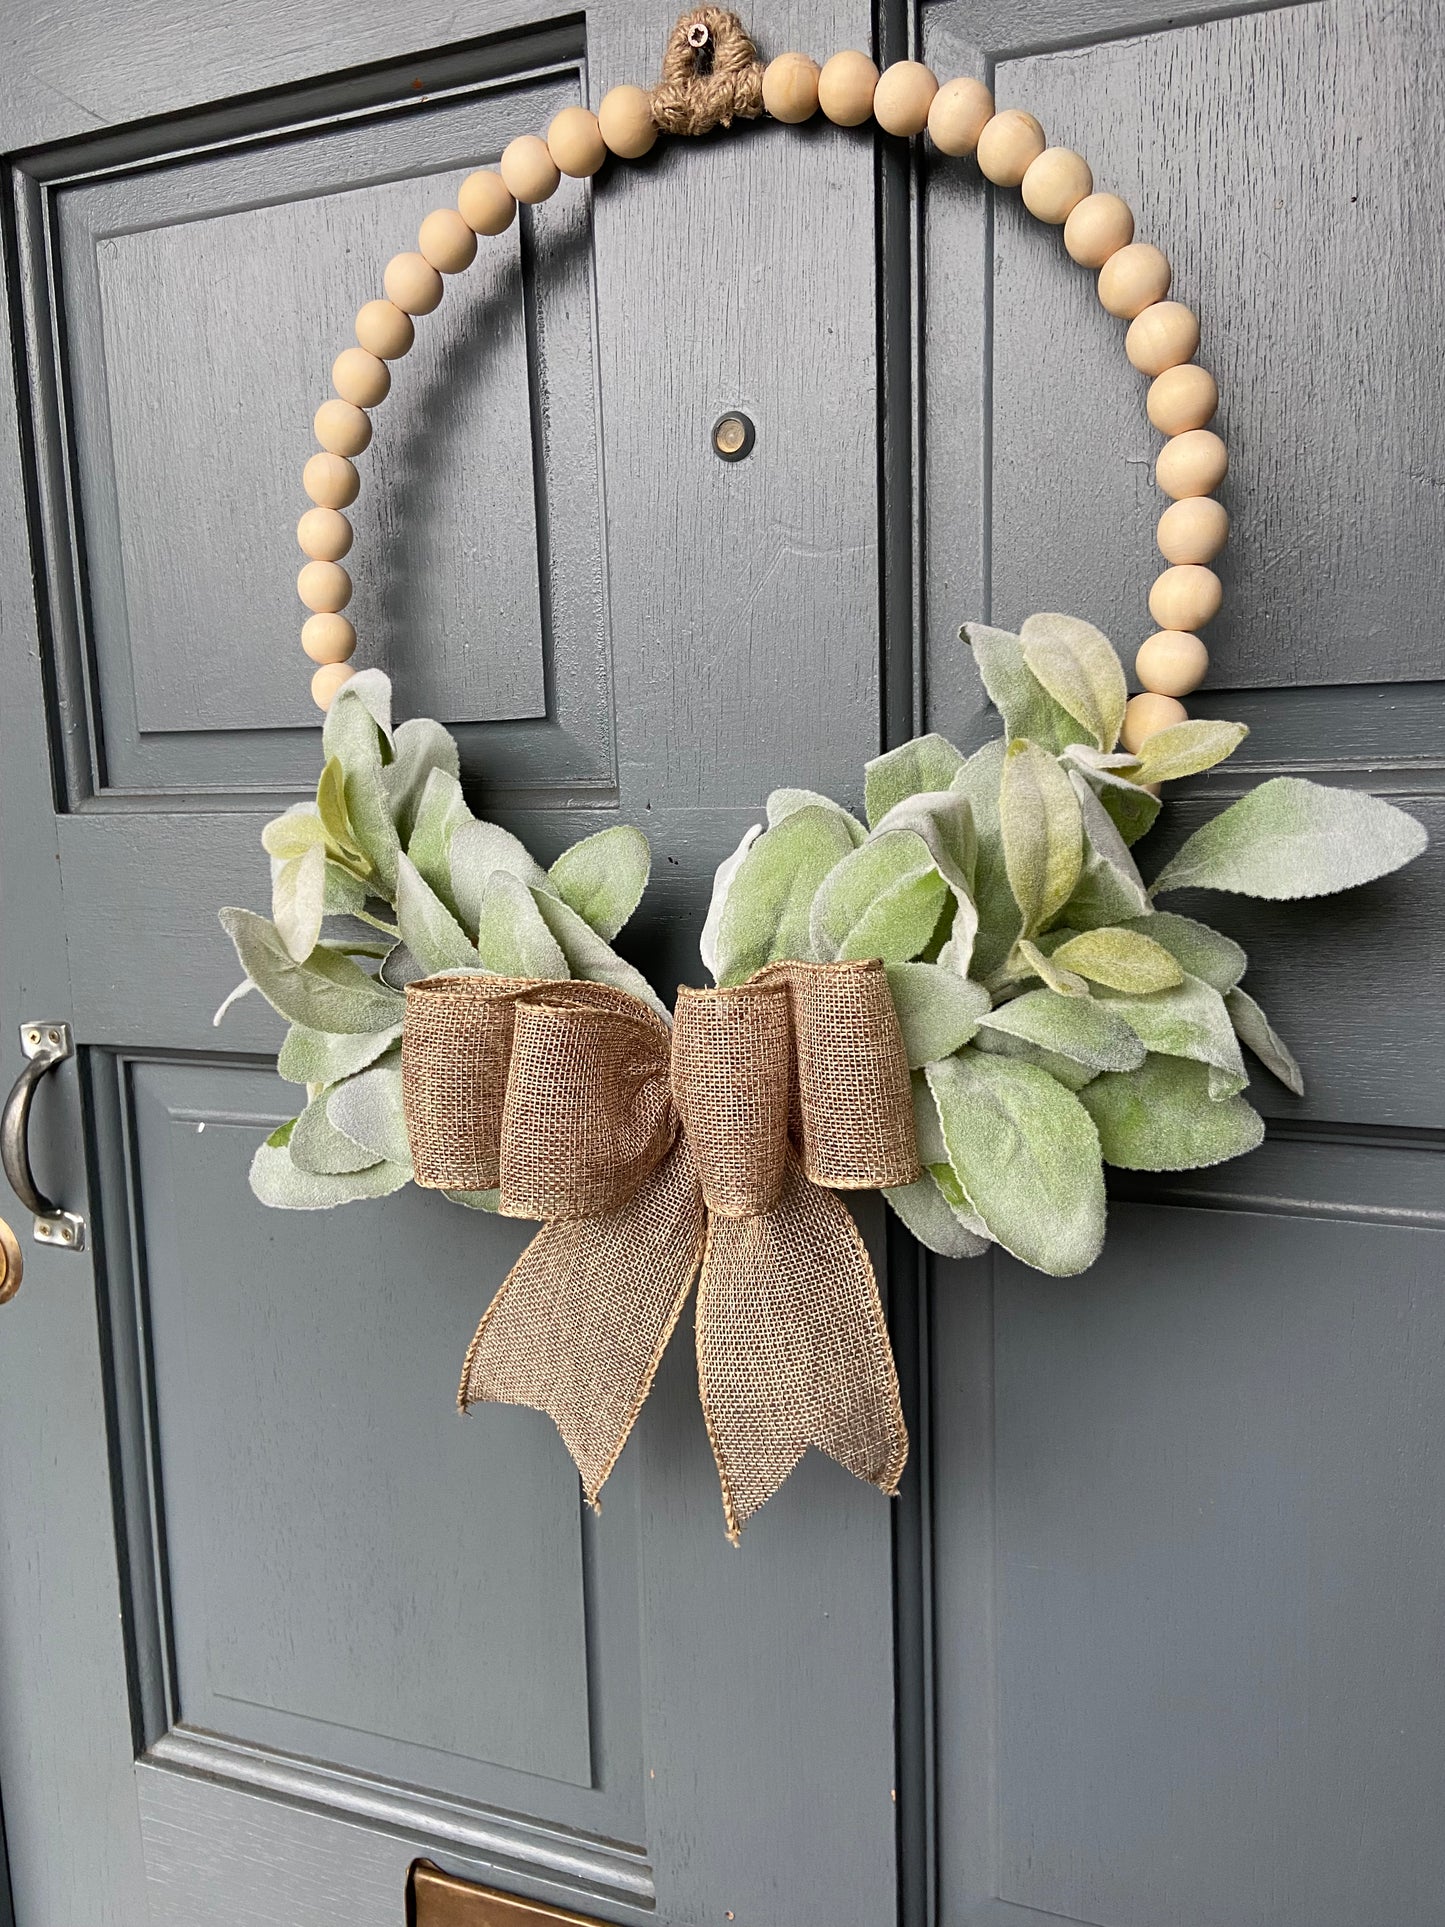 Wooden Bead Door Wreath